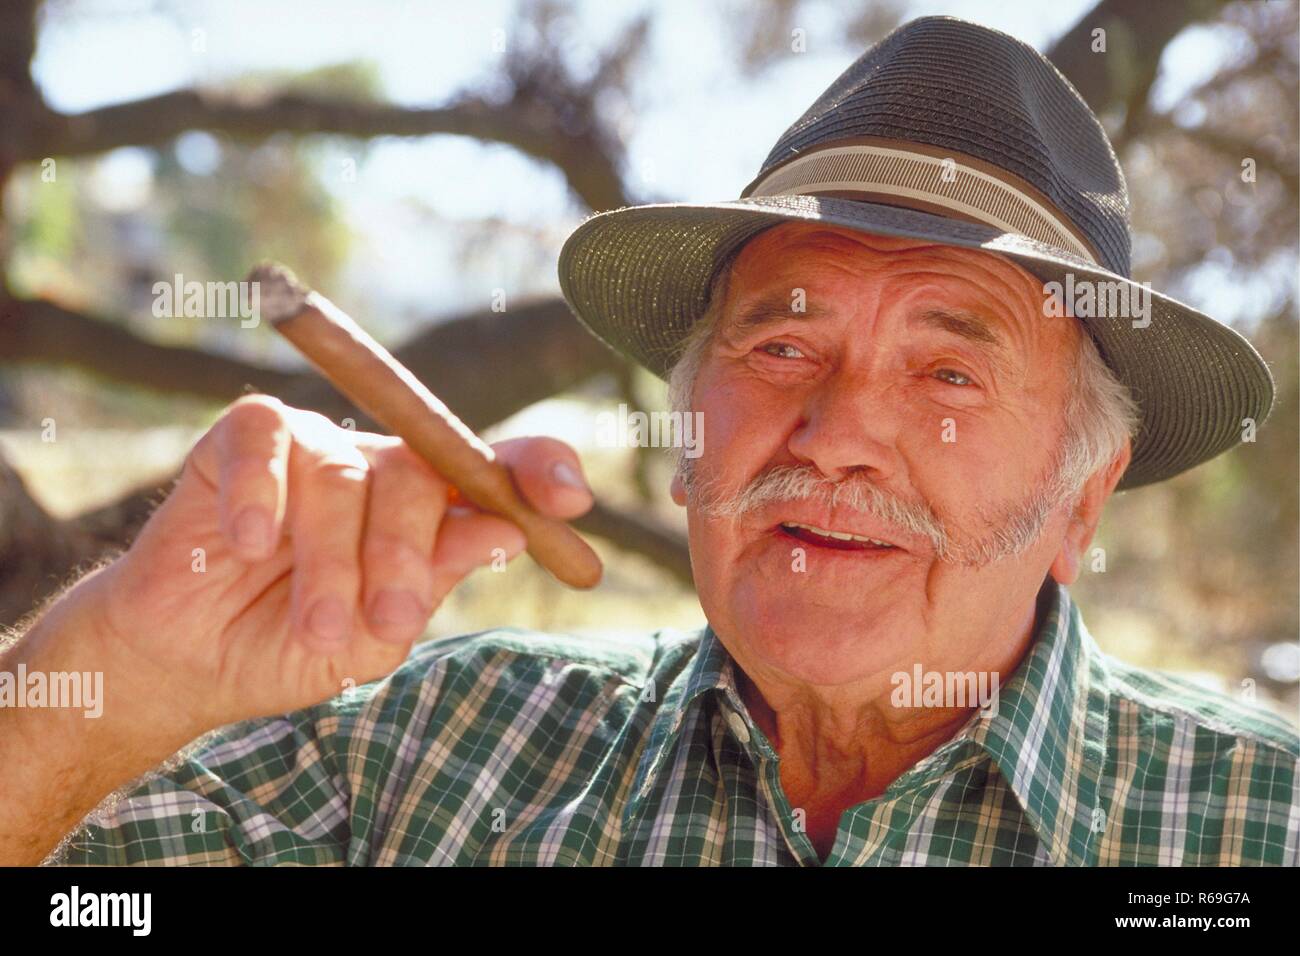 Portrait, Outdoor, Mann mit Oberlippenbart, ca. 65 Jahre alt, bekleidet mit gruen-weiss kariertem Hemd und Hut mit einer Zigarre in der Hand unter einem Baum Stock Photo